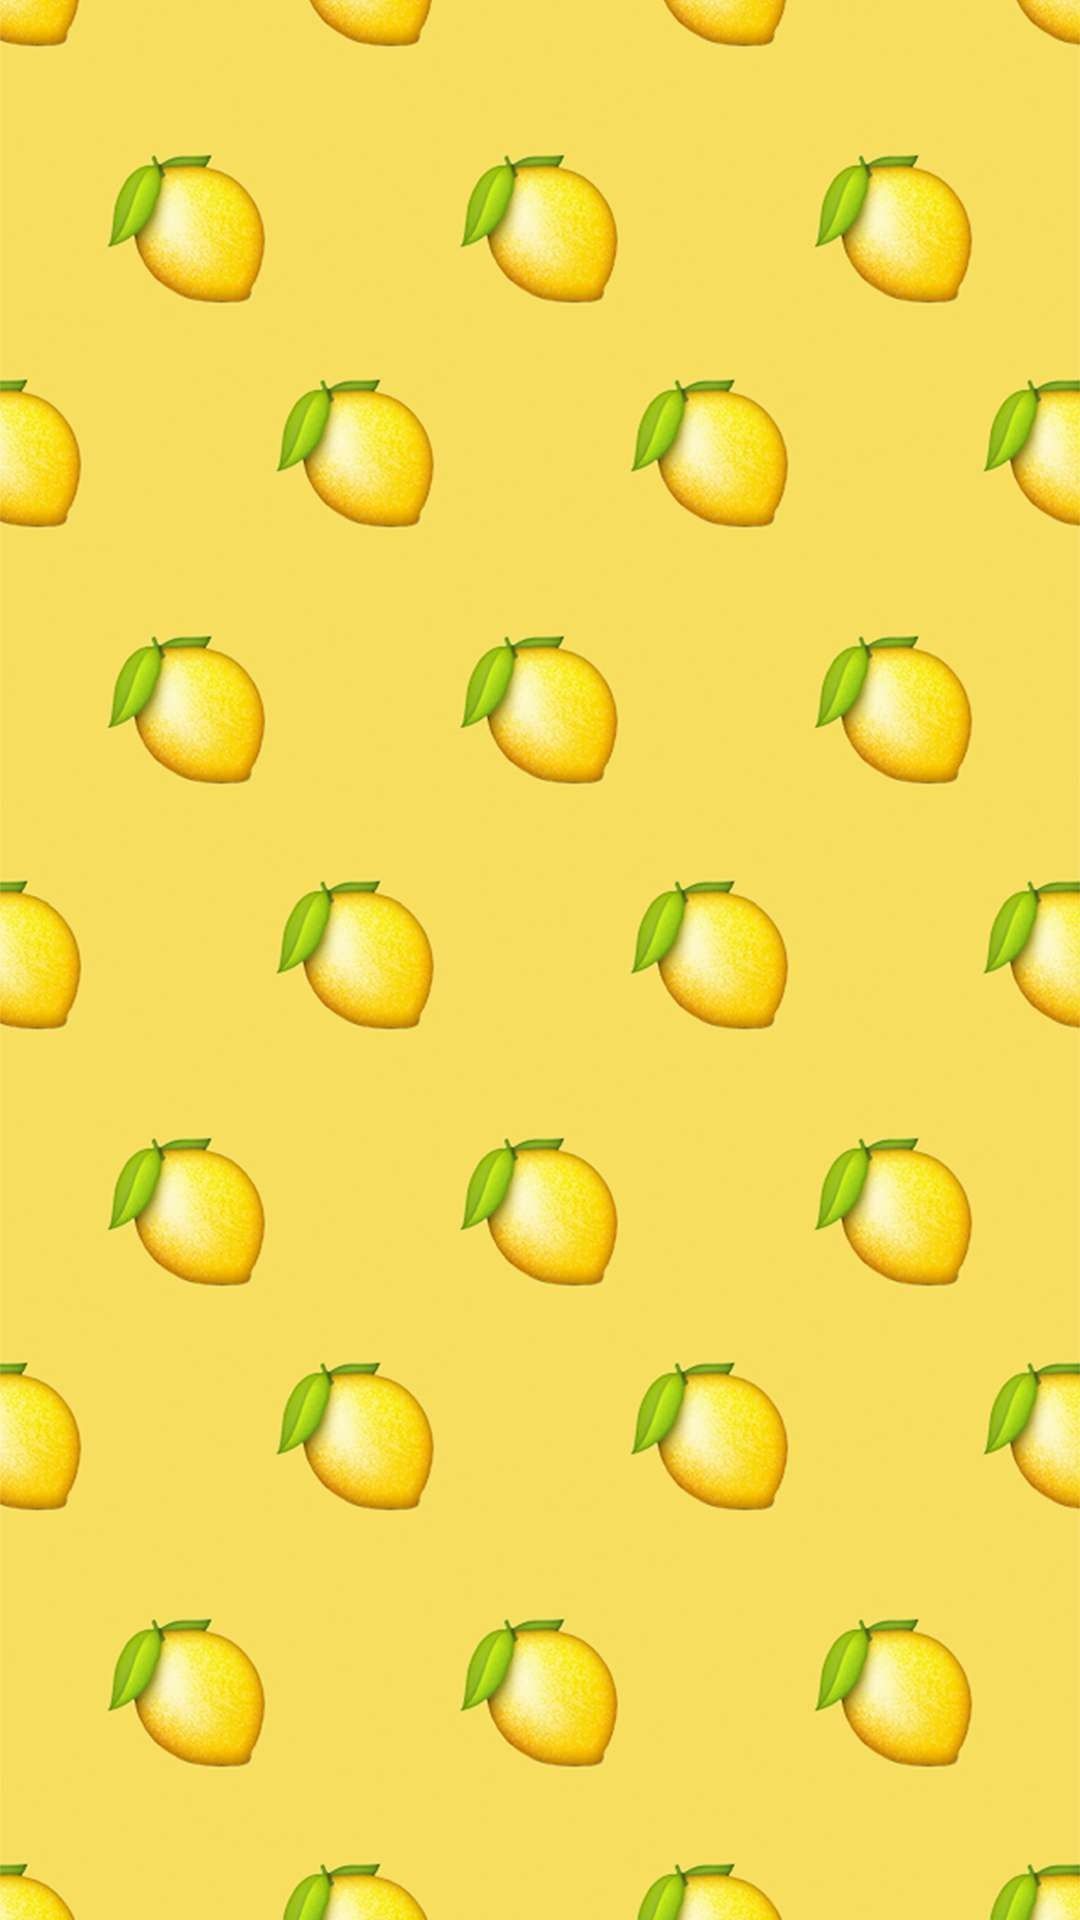 Lemon Aesthetic Wallpaper Free Lemon Aesthetic Background